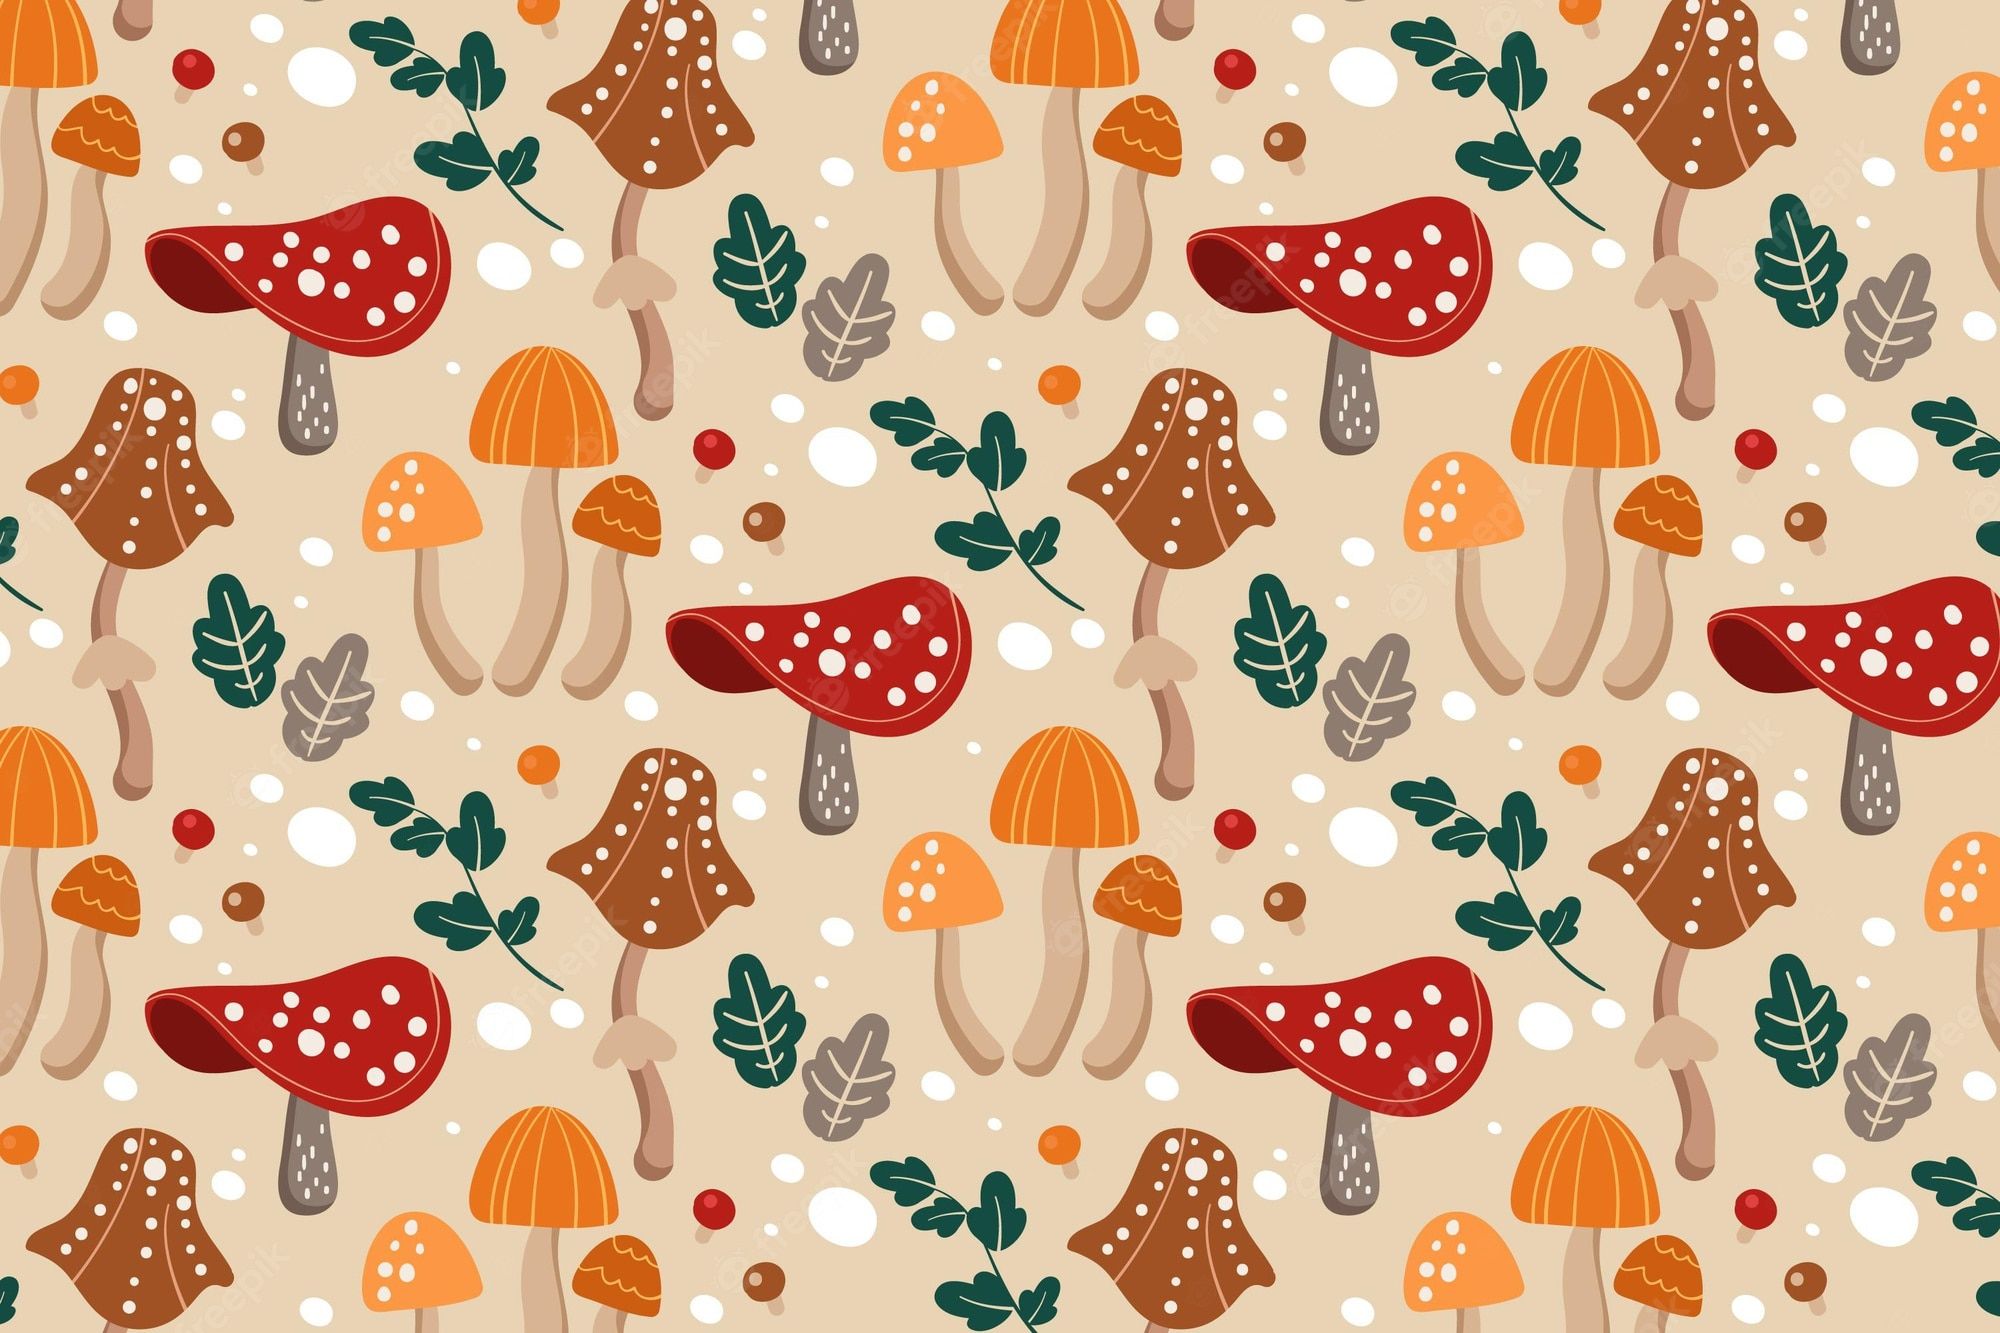 Mushroom Wallpaper Image